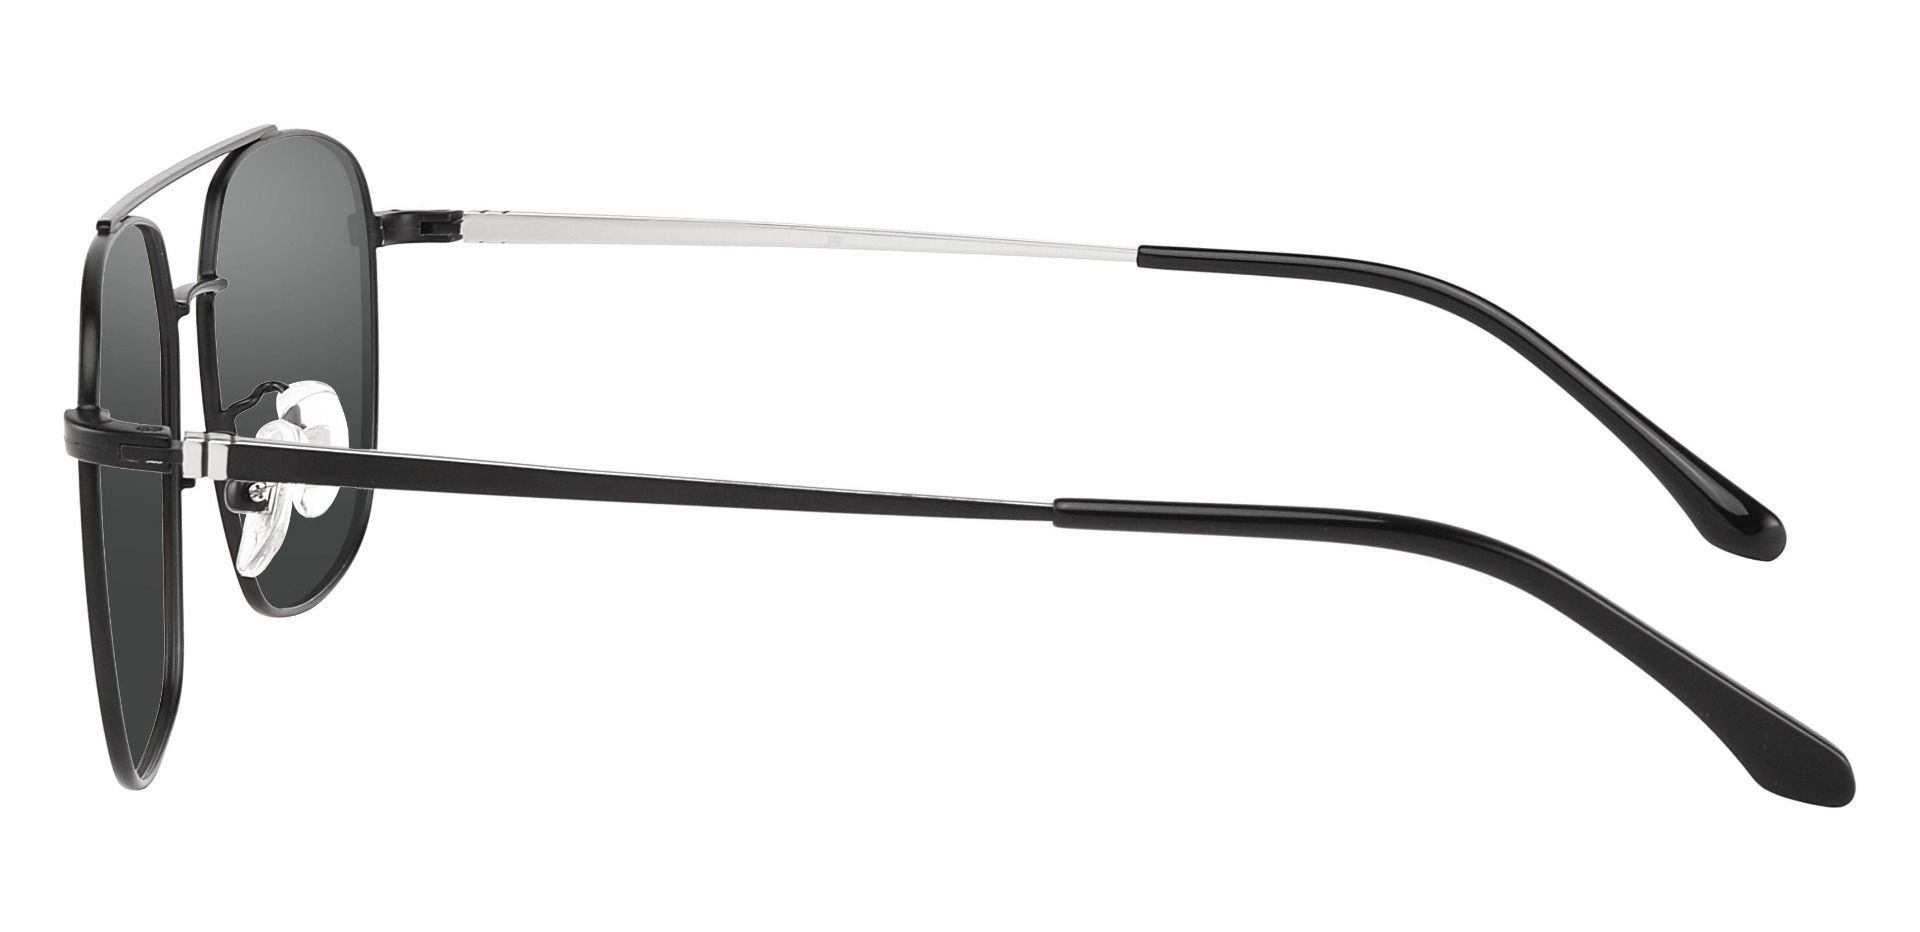 Trevor Aviator Lined Bifocal Sunglasses - Black Frame With Gray Lenses